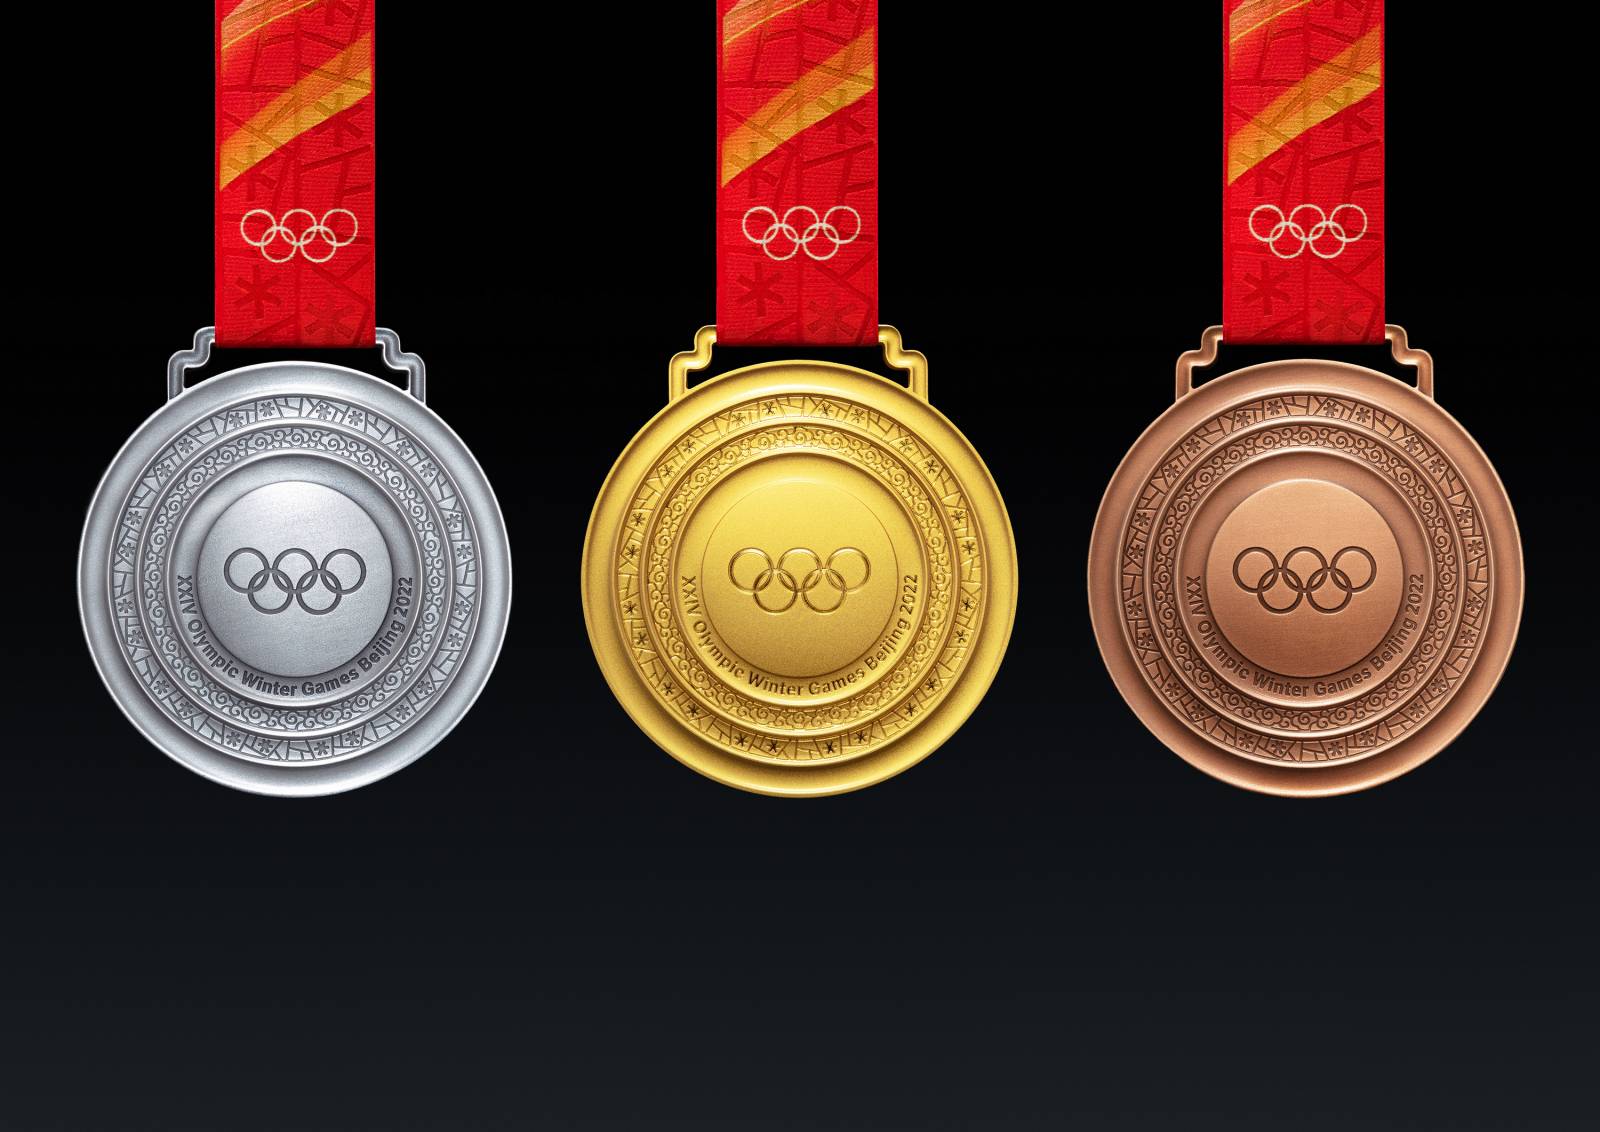 Германия – лидер медального зачёта после 9 дня Олимпиады, Россия – 8